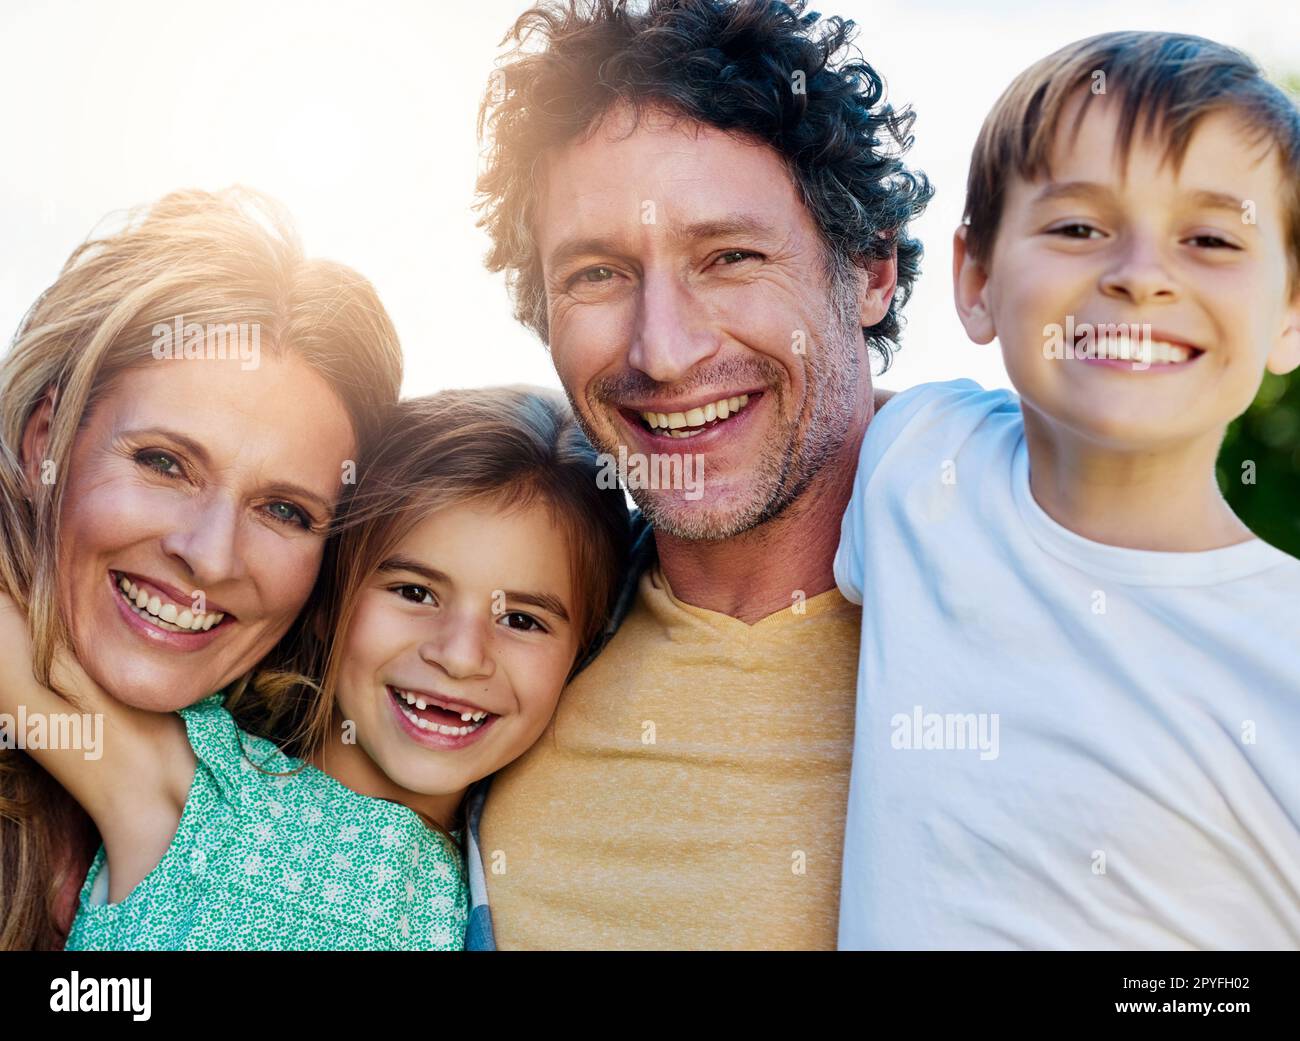 Unsere Familie hat oberste Priorität. Porträt einer glücklichen Familie, die Zeit zusammen im Freien verbringt. Stockfoto